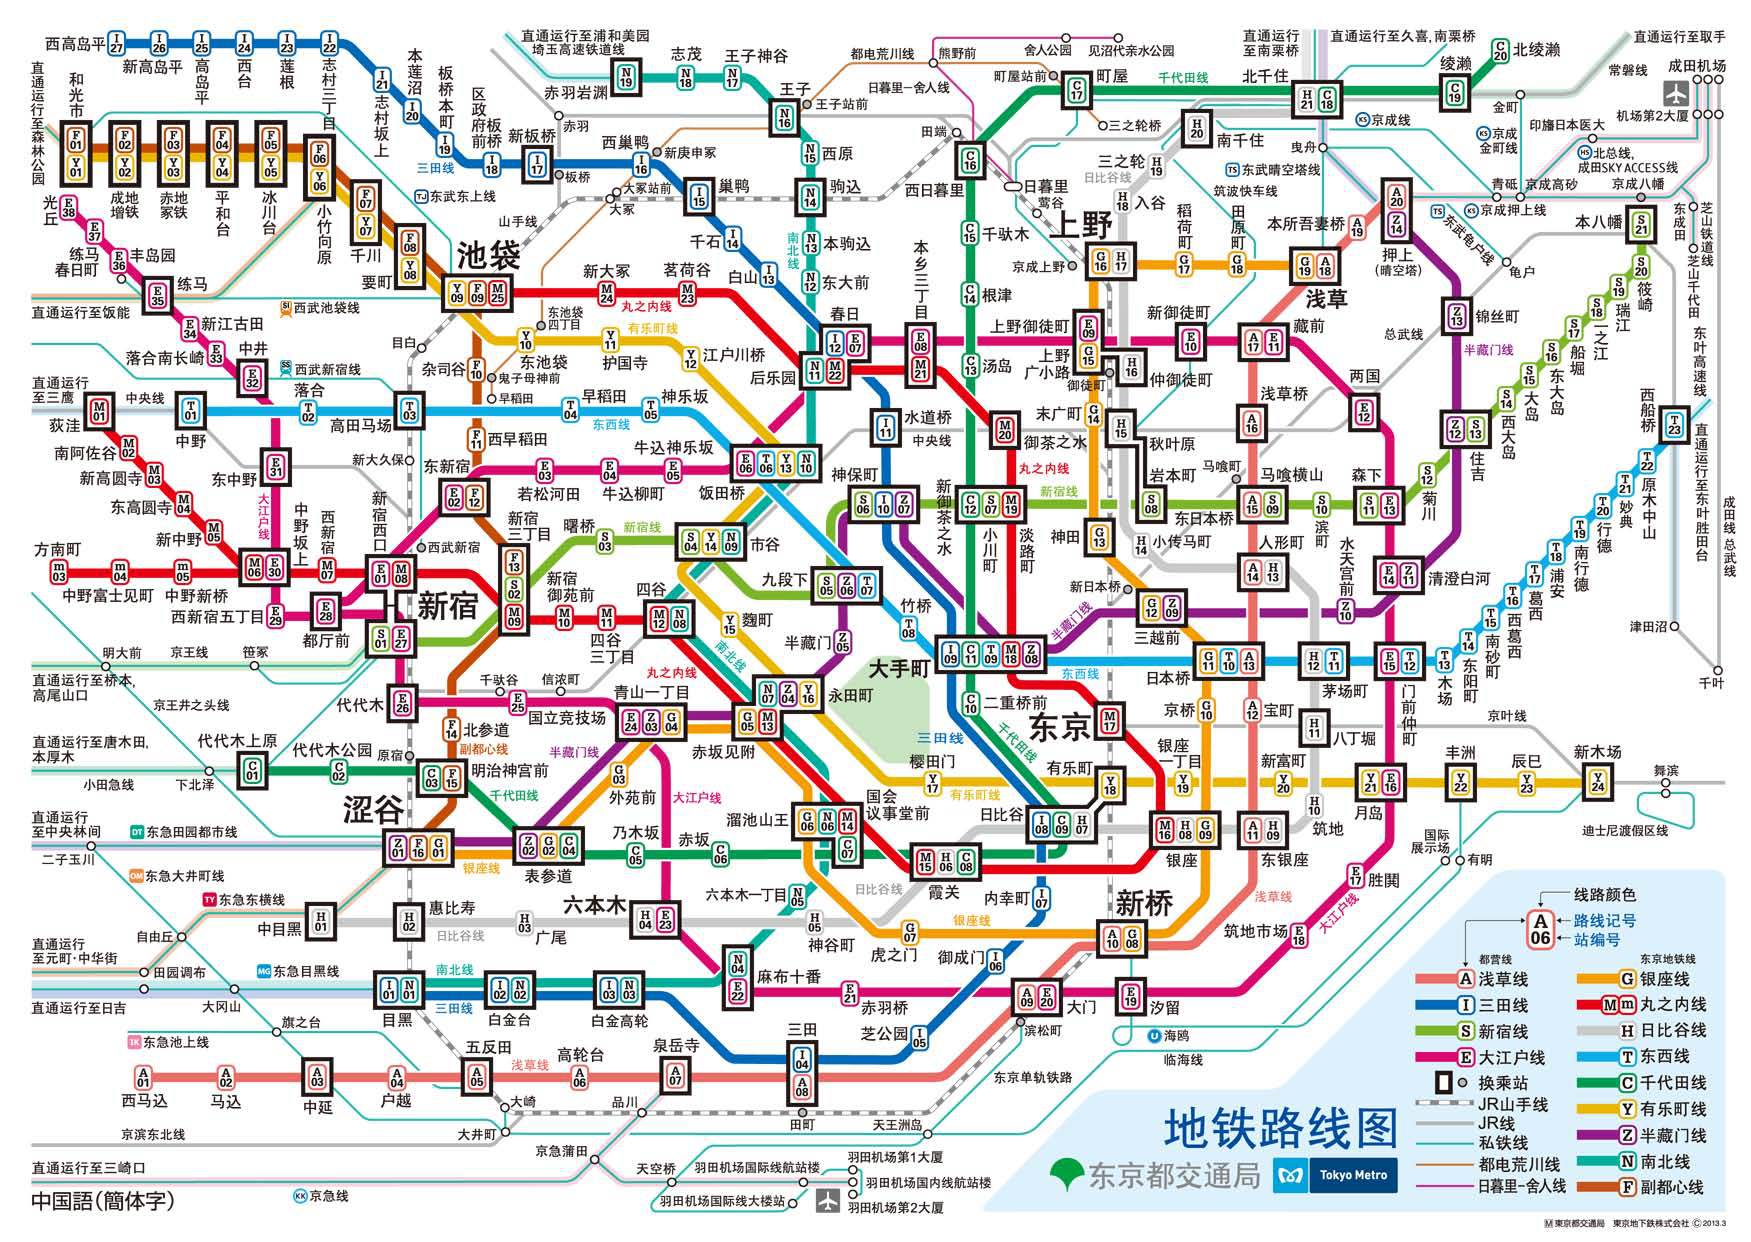 人口密度远超北京:日本东京为何不堵车?图片